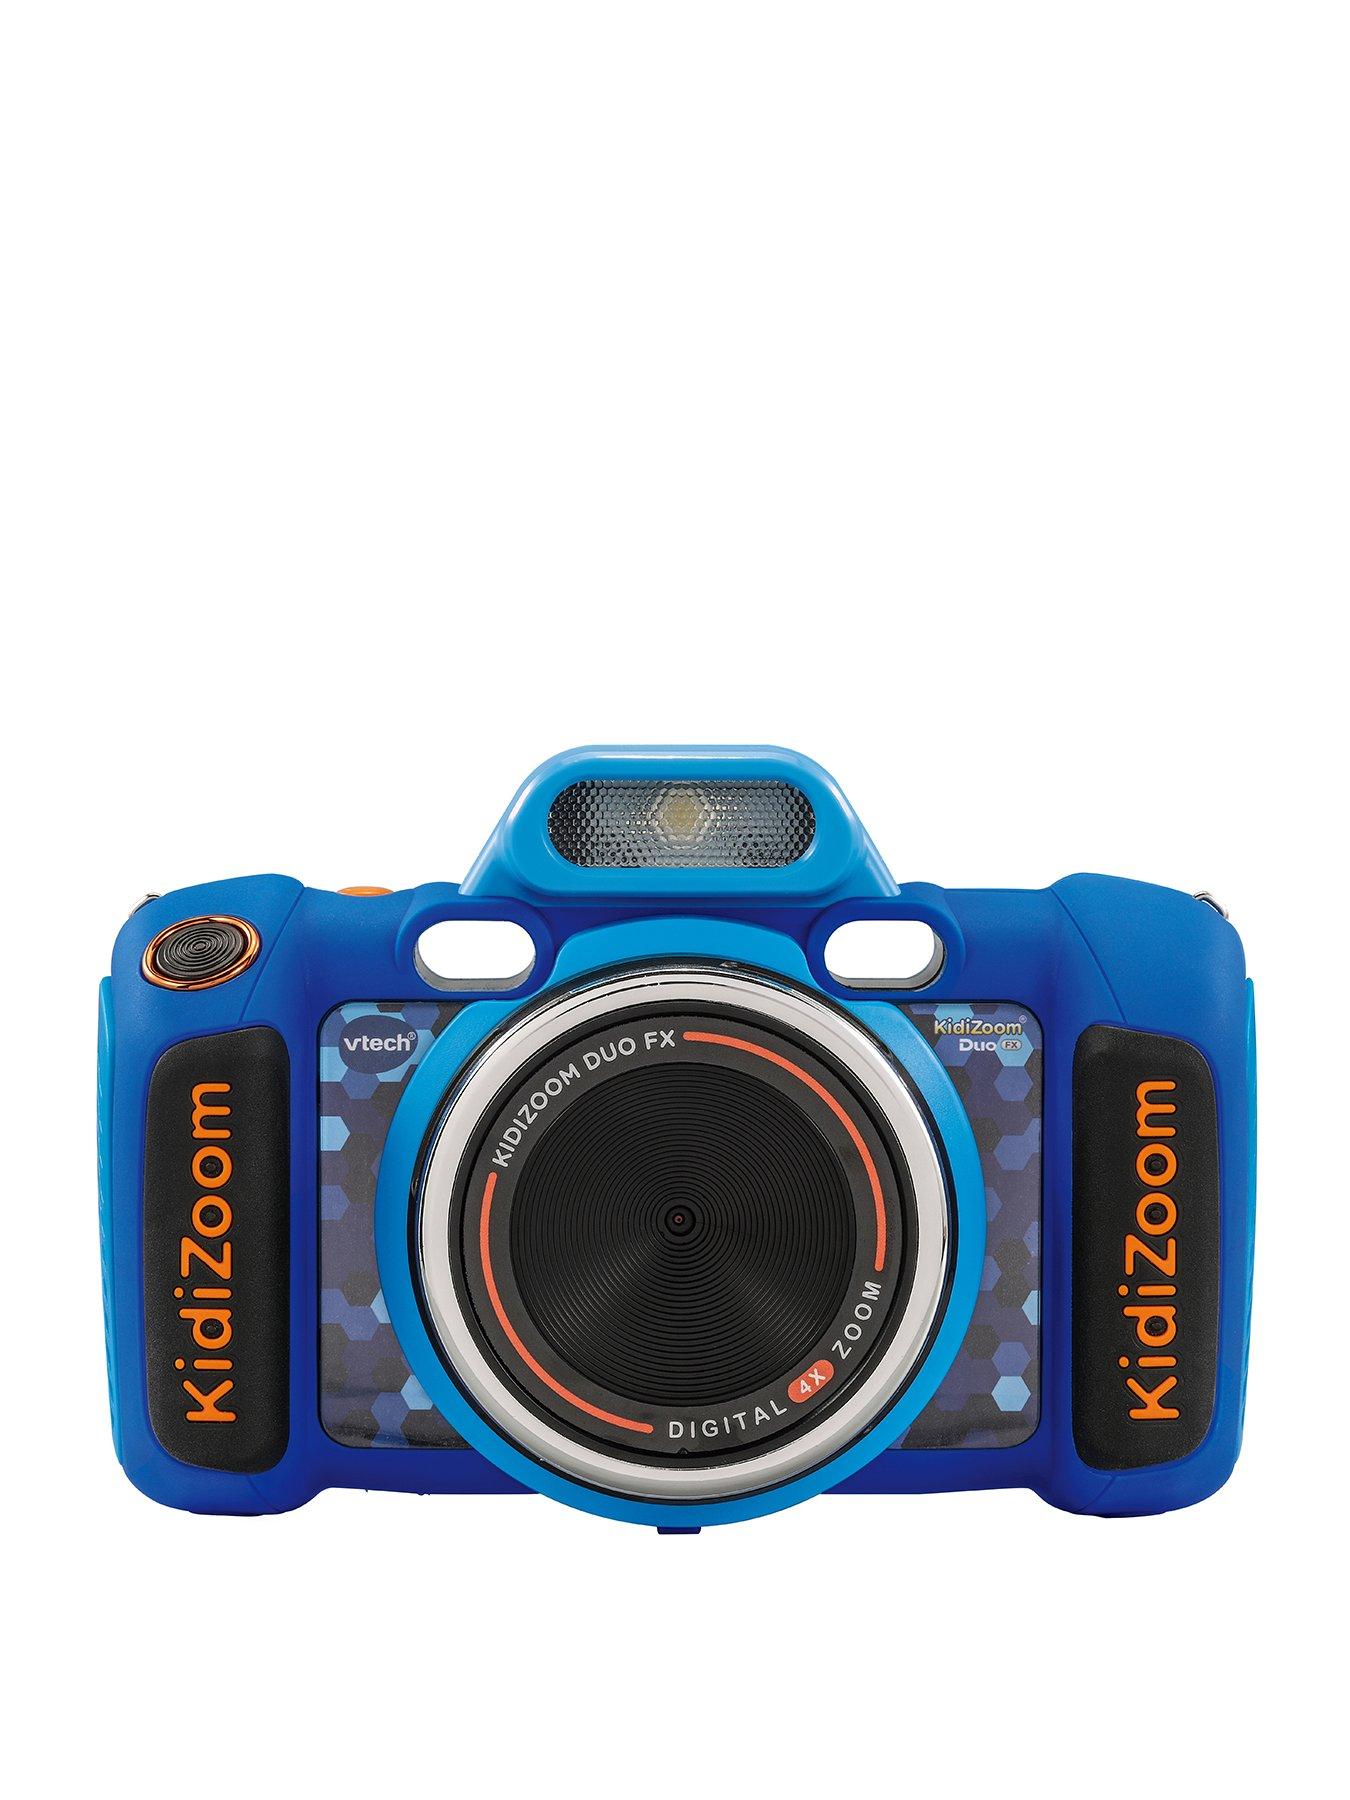 Best Buy: VTech KidiZoom Duo DX 5.0-Megapixel Digital Camera Blue